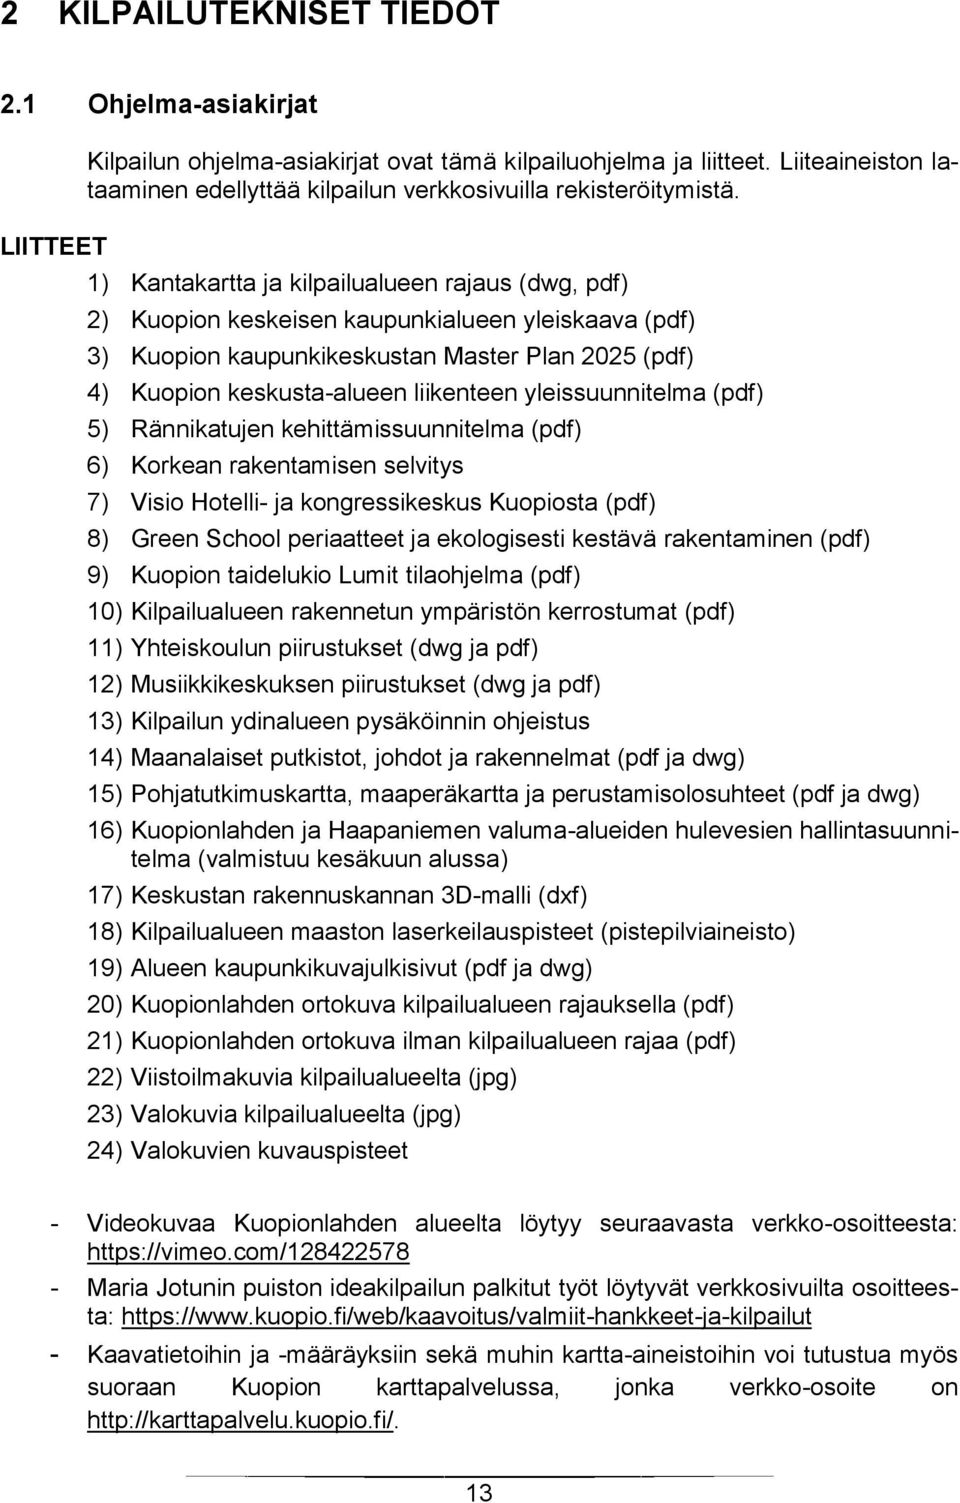 1) Kantakartta ja kilpailualueen rajaus (dwg, pdf) 2) Kuopion keskeisen kaupunkialueen yleiskaava (pdf) 3) Kuopion kaupunkikeskustan Master Plan 2025 (pdf) 4) Kuopion keskusta-alueen liikenteen